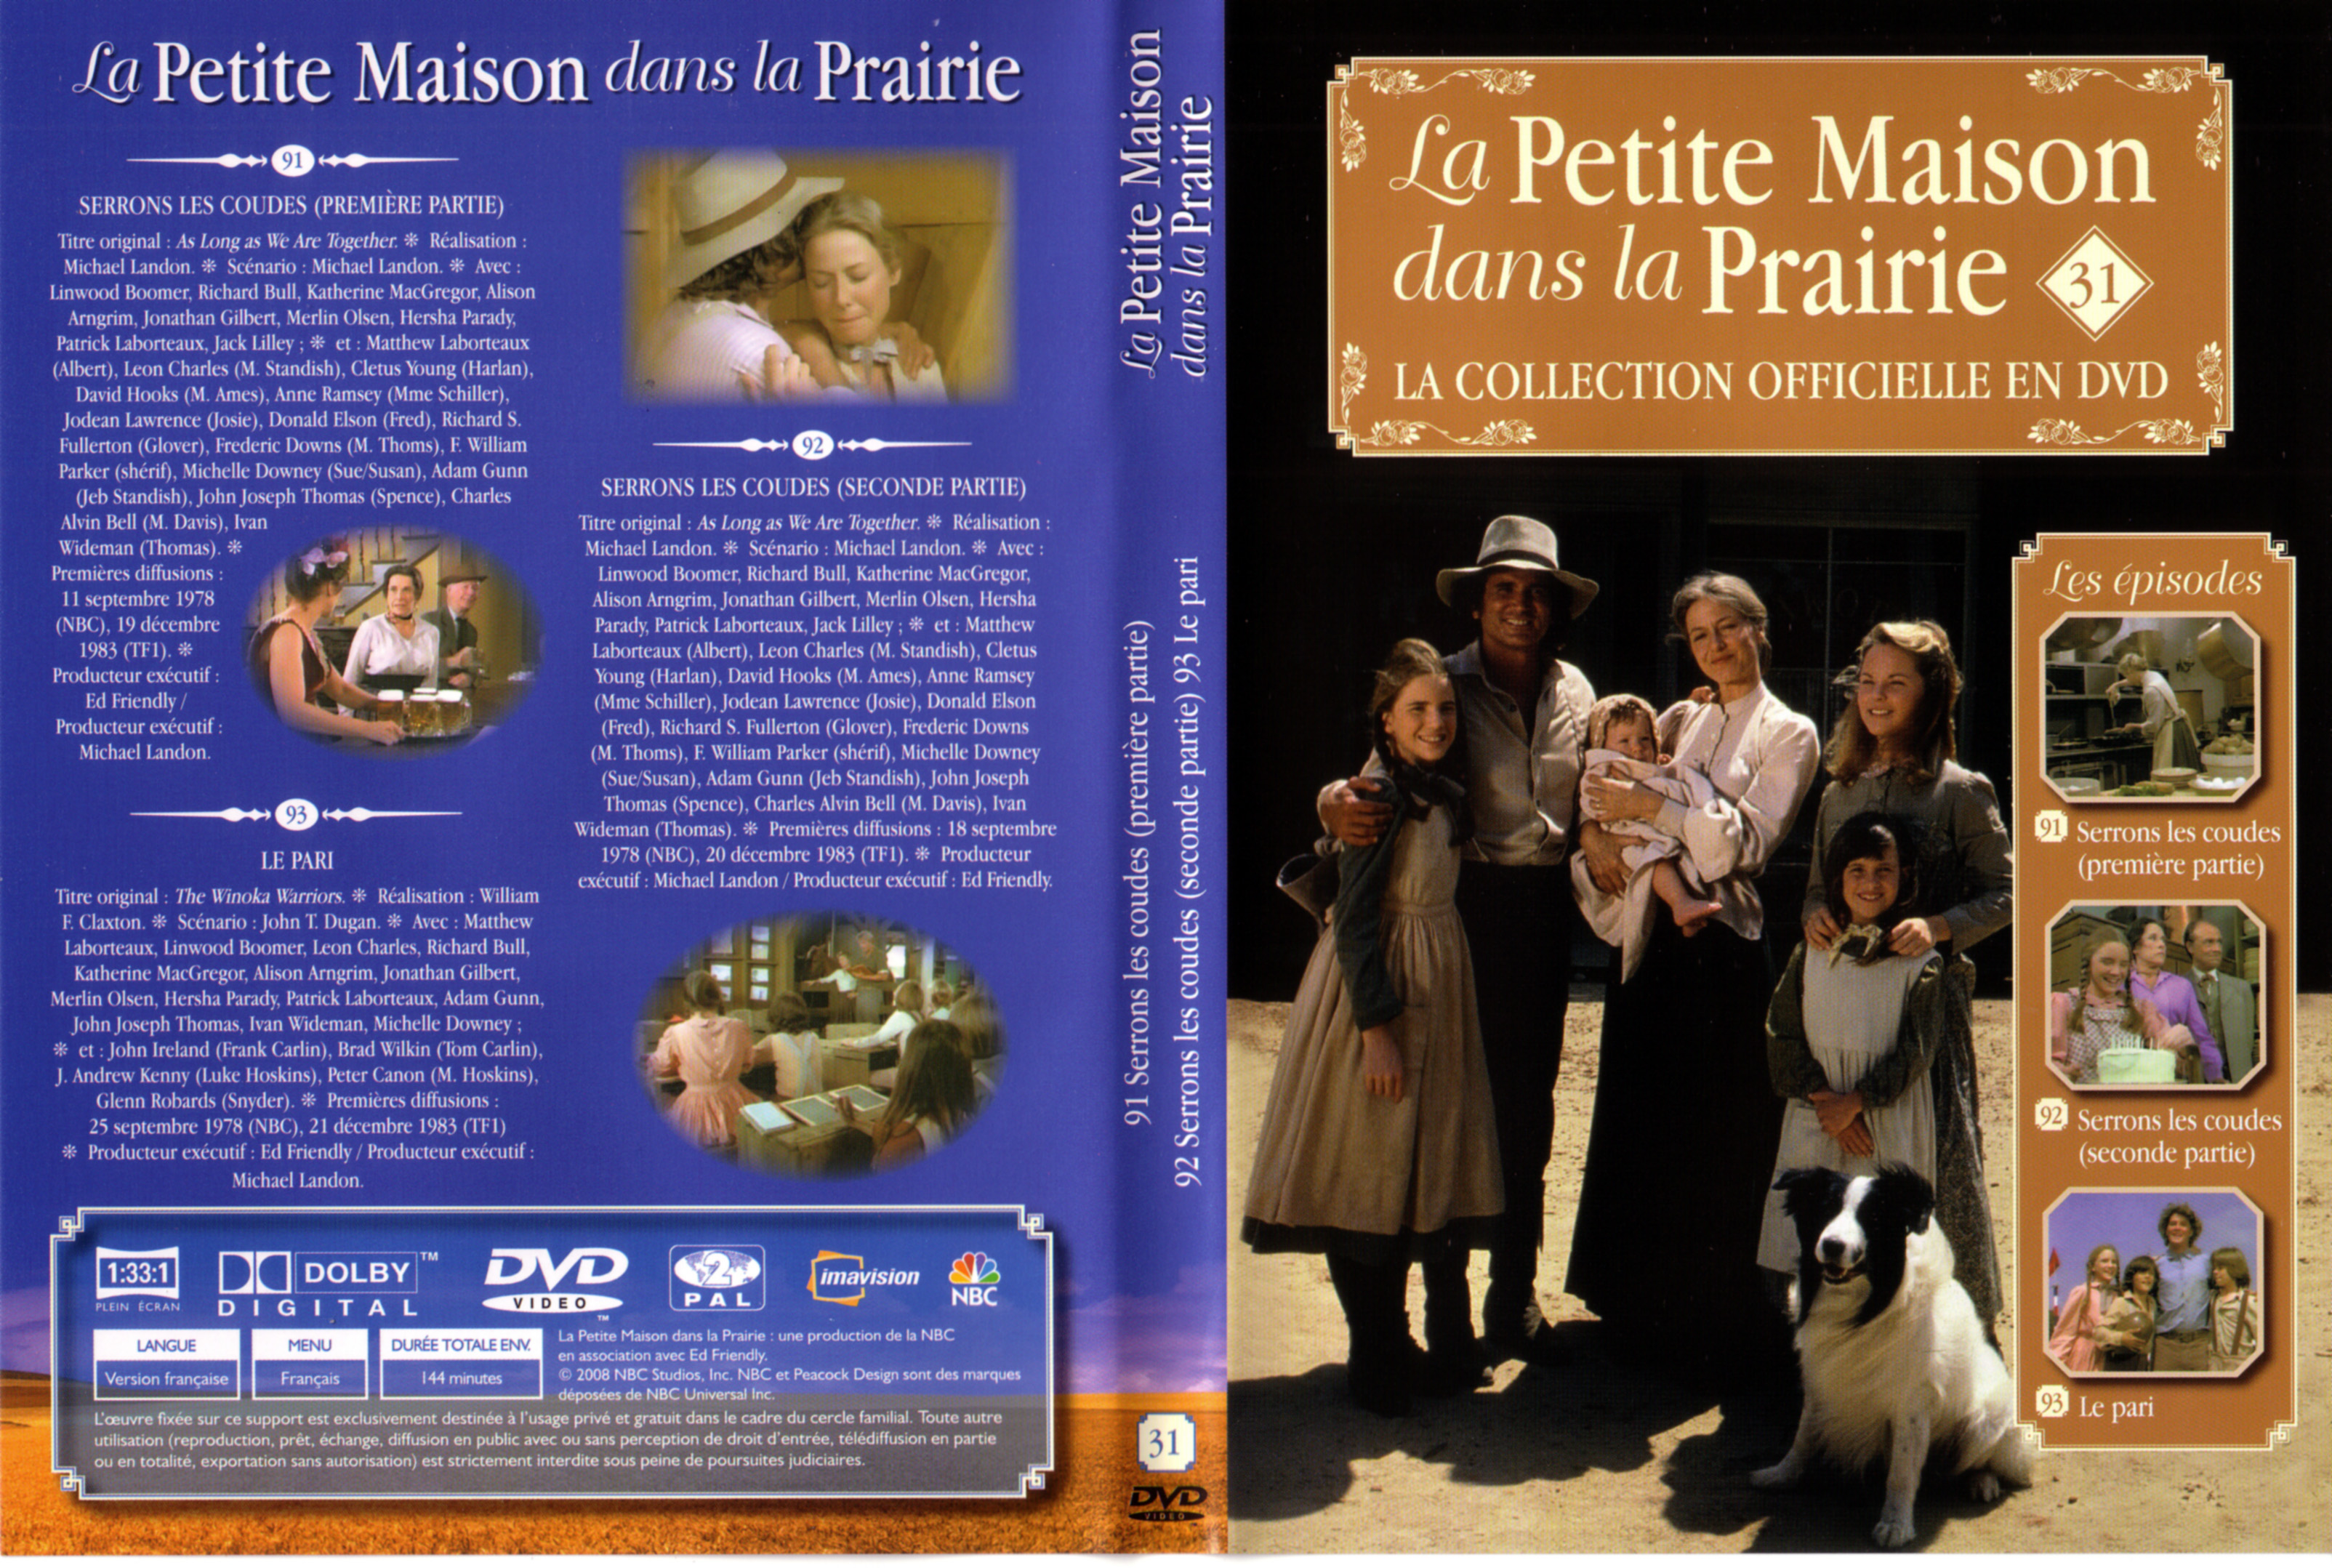 Jaquette DVD La petite maison dans la prairie La Collection vol 31